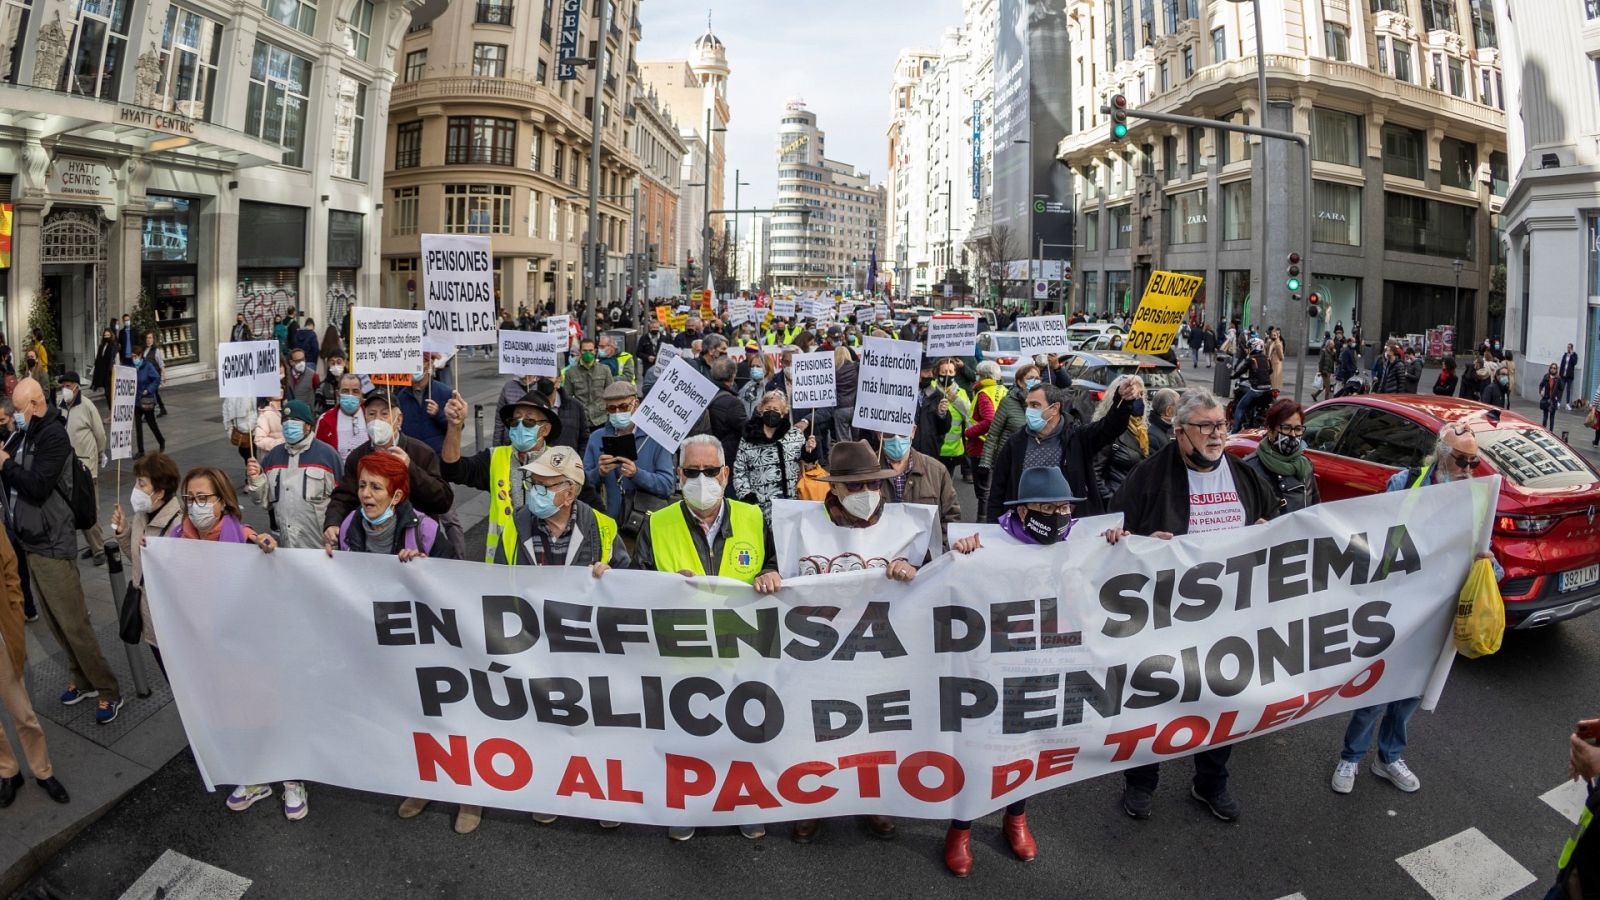 Pensionistas de toda España vuelven a reclamar pensiones dignas